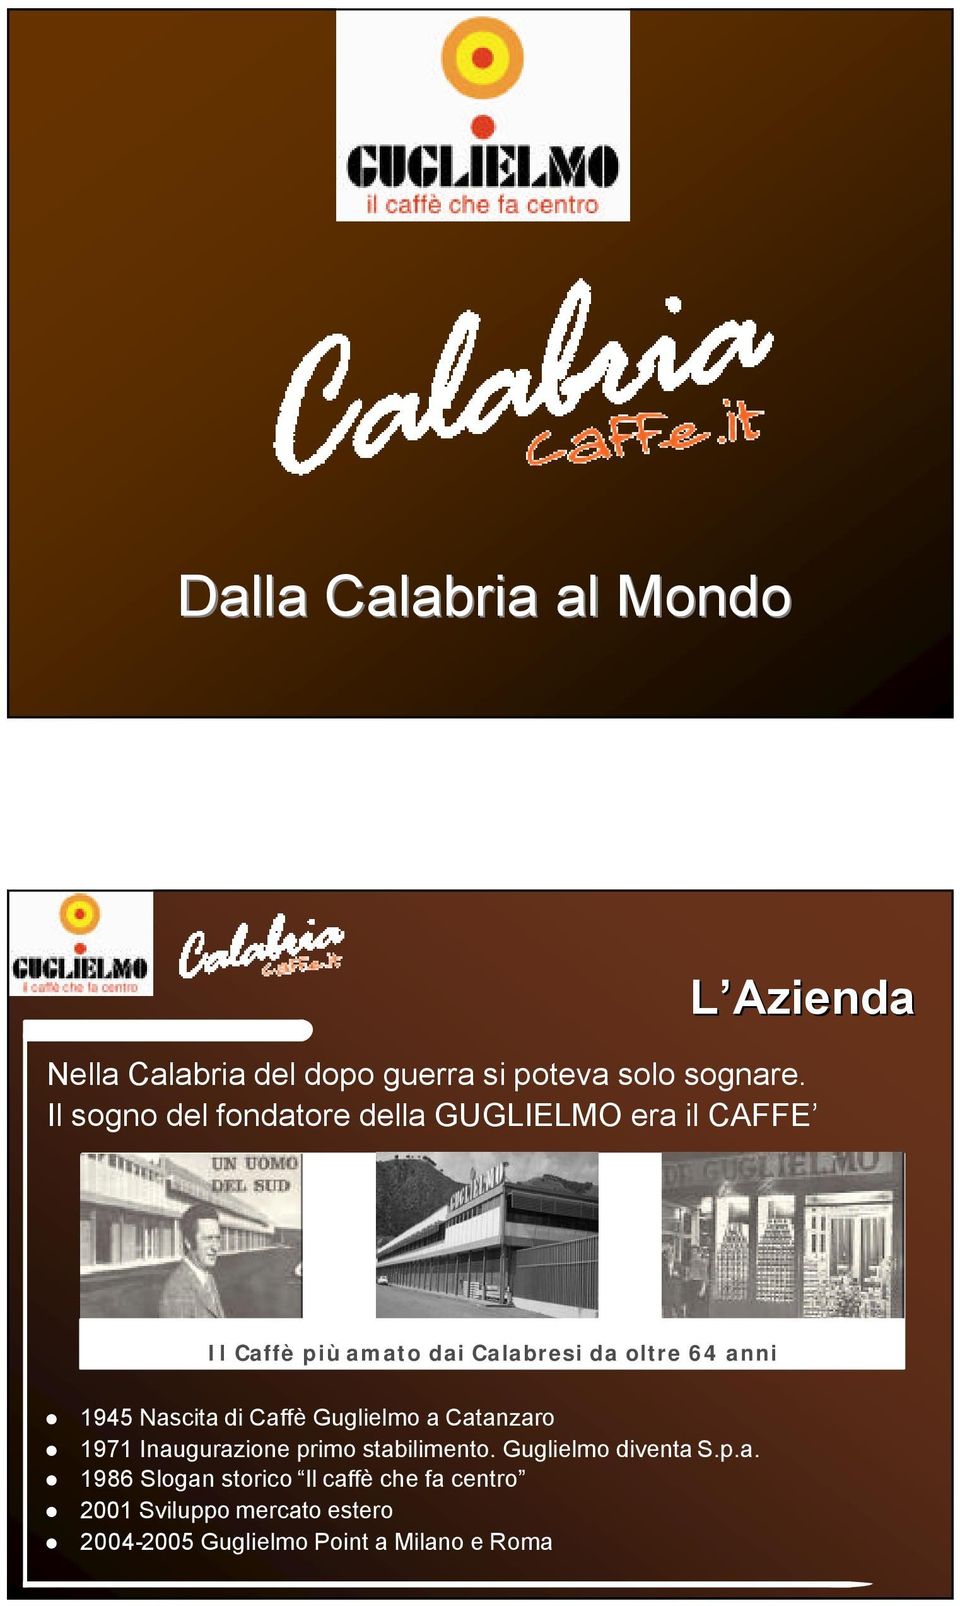 1945 Nascita di Caffè Guglielmo a Catanzaro 1971 Inaugurazione primo stabilimento. Guglielmo diventa S.